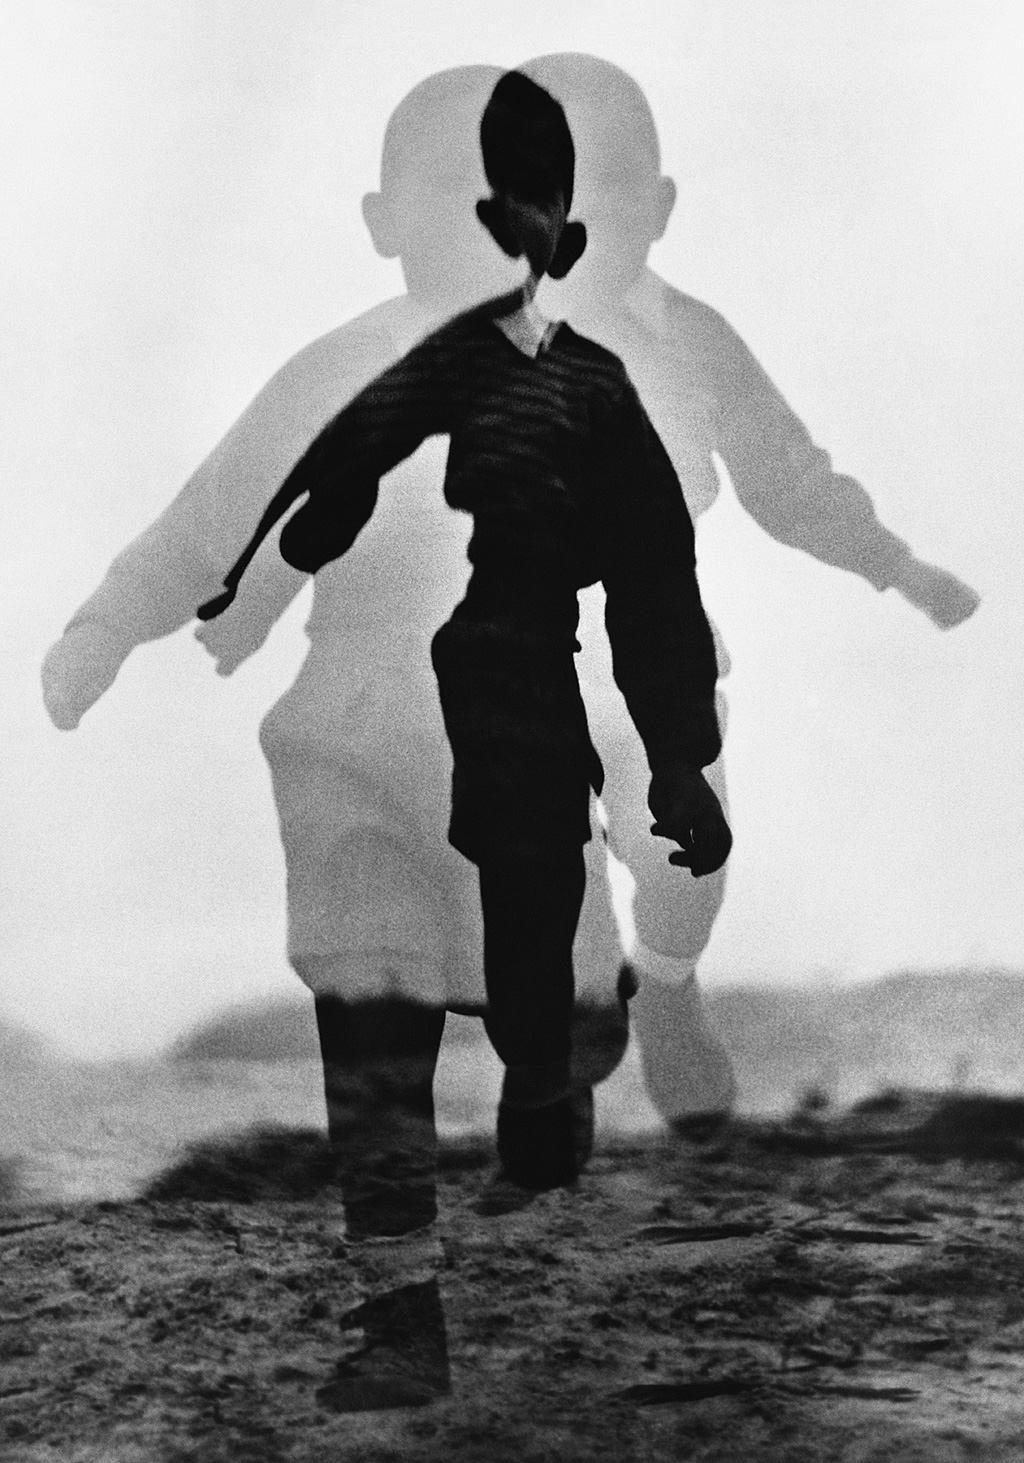 Menino correndo – fotografia feita em 1960, por German Lorca